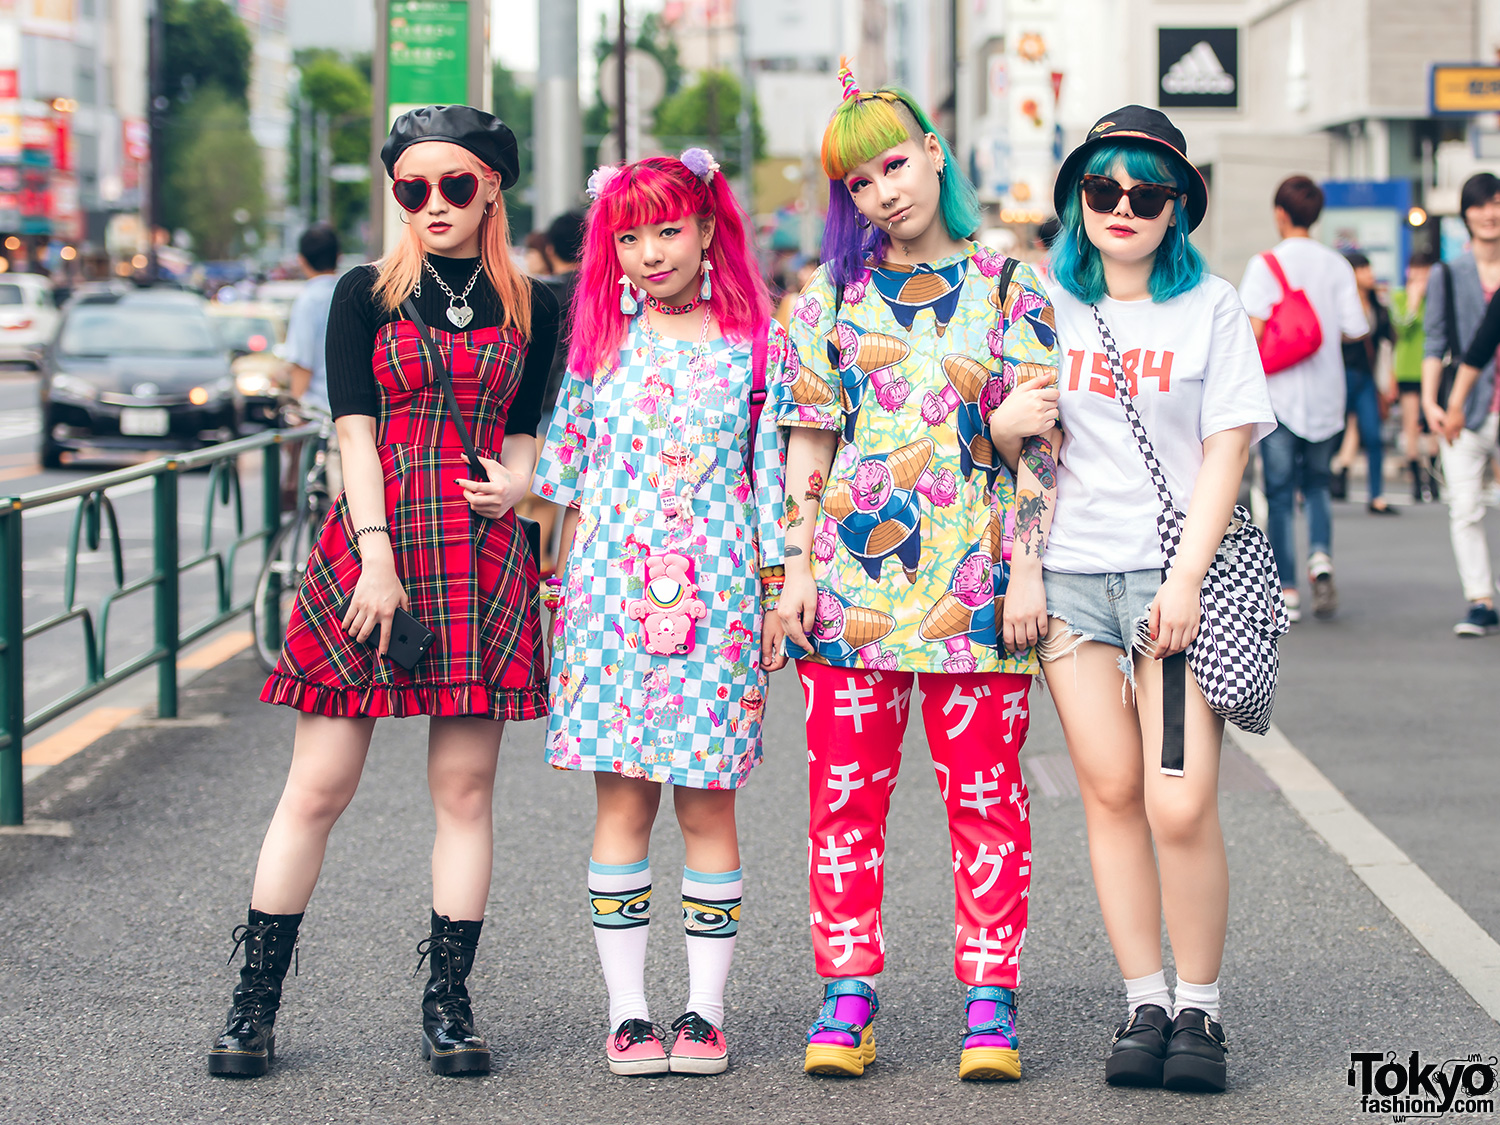 Colorful Hair & Fashion in Harajuku w/ Sagi Dolls, Vivienne Westwood, Powerpuff Girls, Galaxxxy, Gosha Rubchinskiy, Tokyo Bopper & Gucci